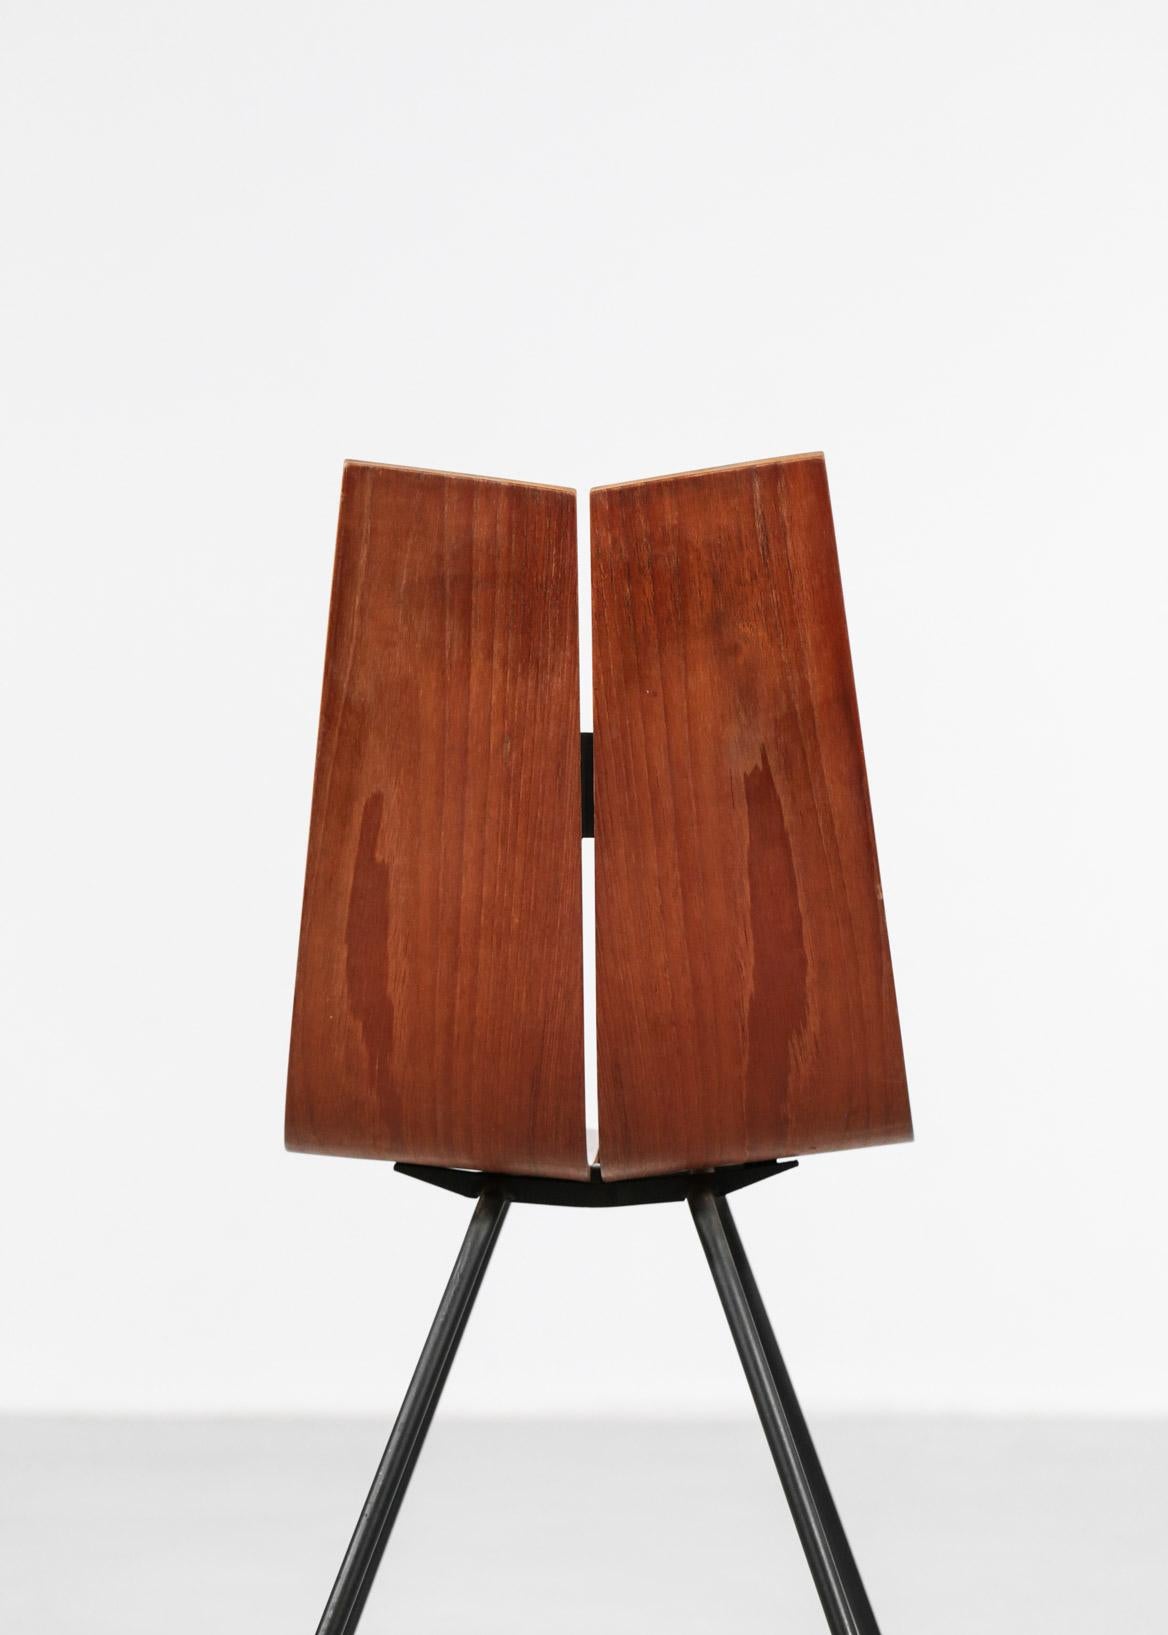 Mid-Century Modern GA chair by Hans Bellmann, Suisse Design, 1960s For Sale